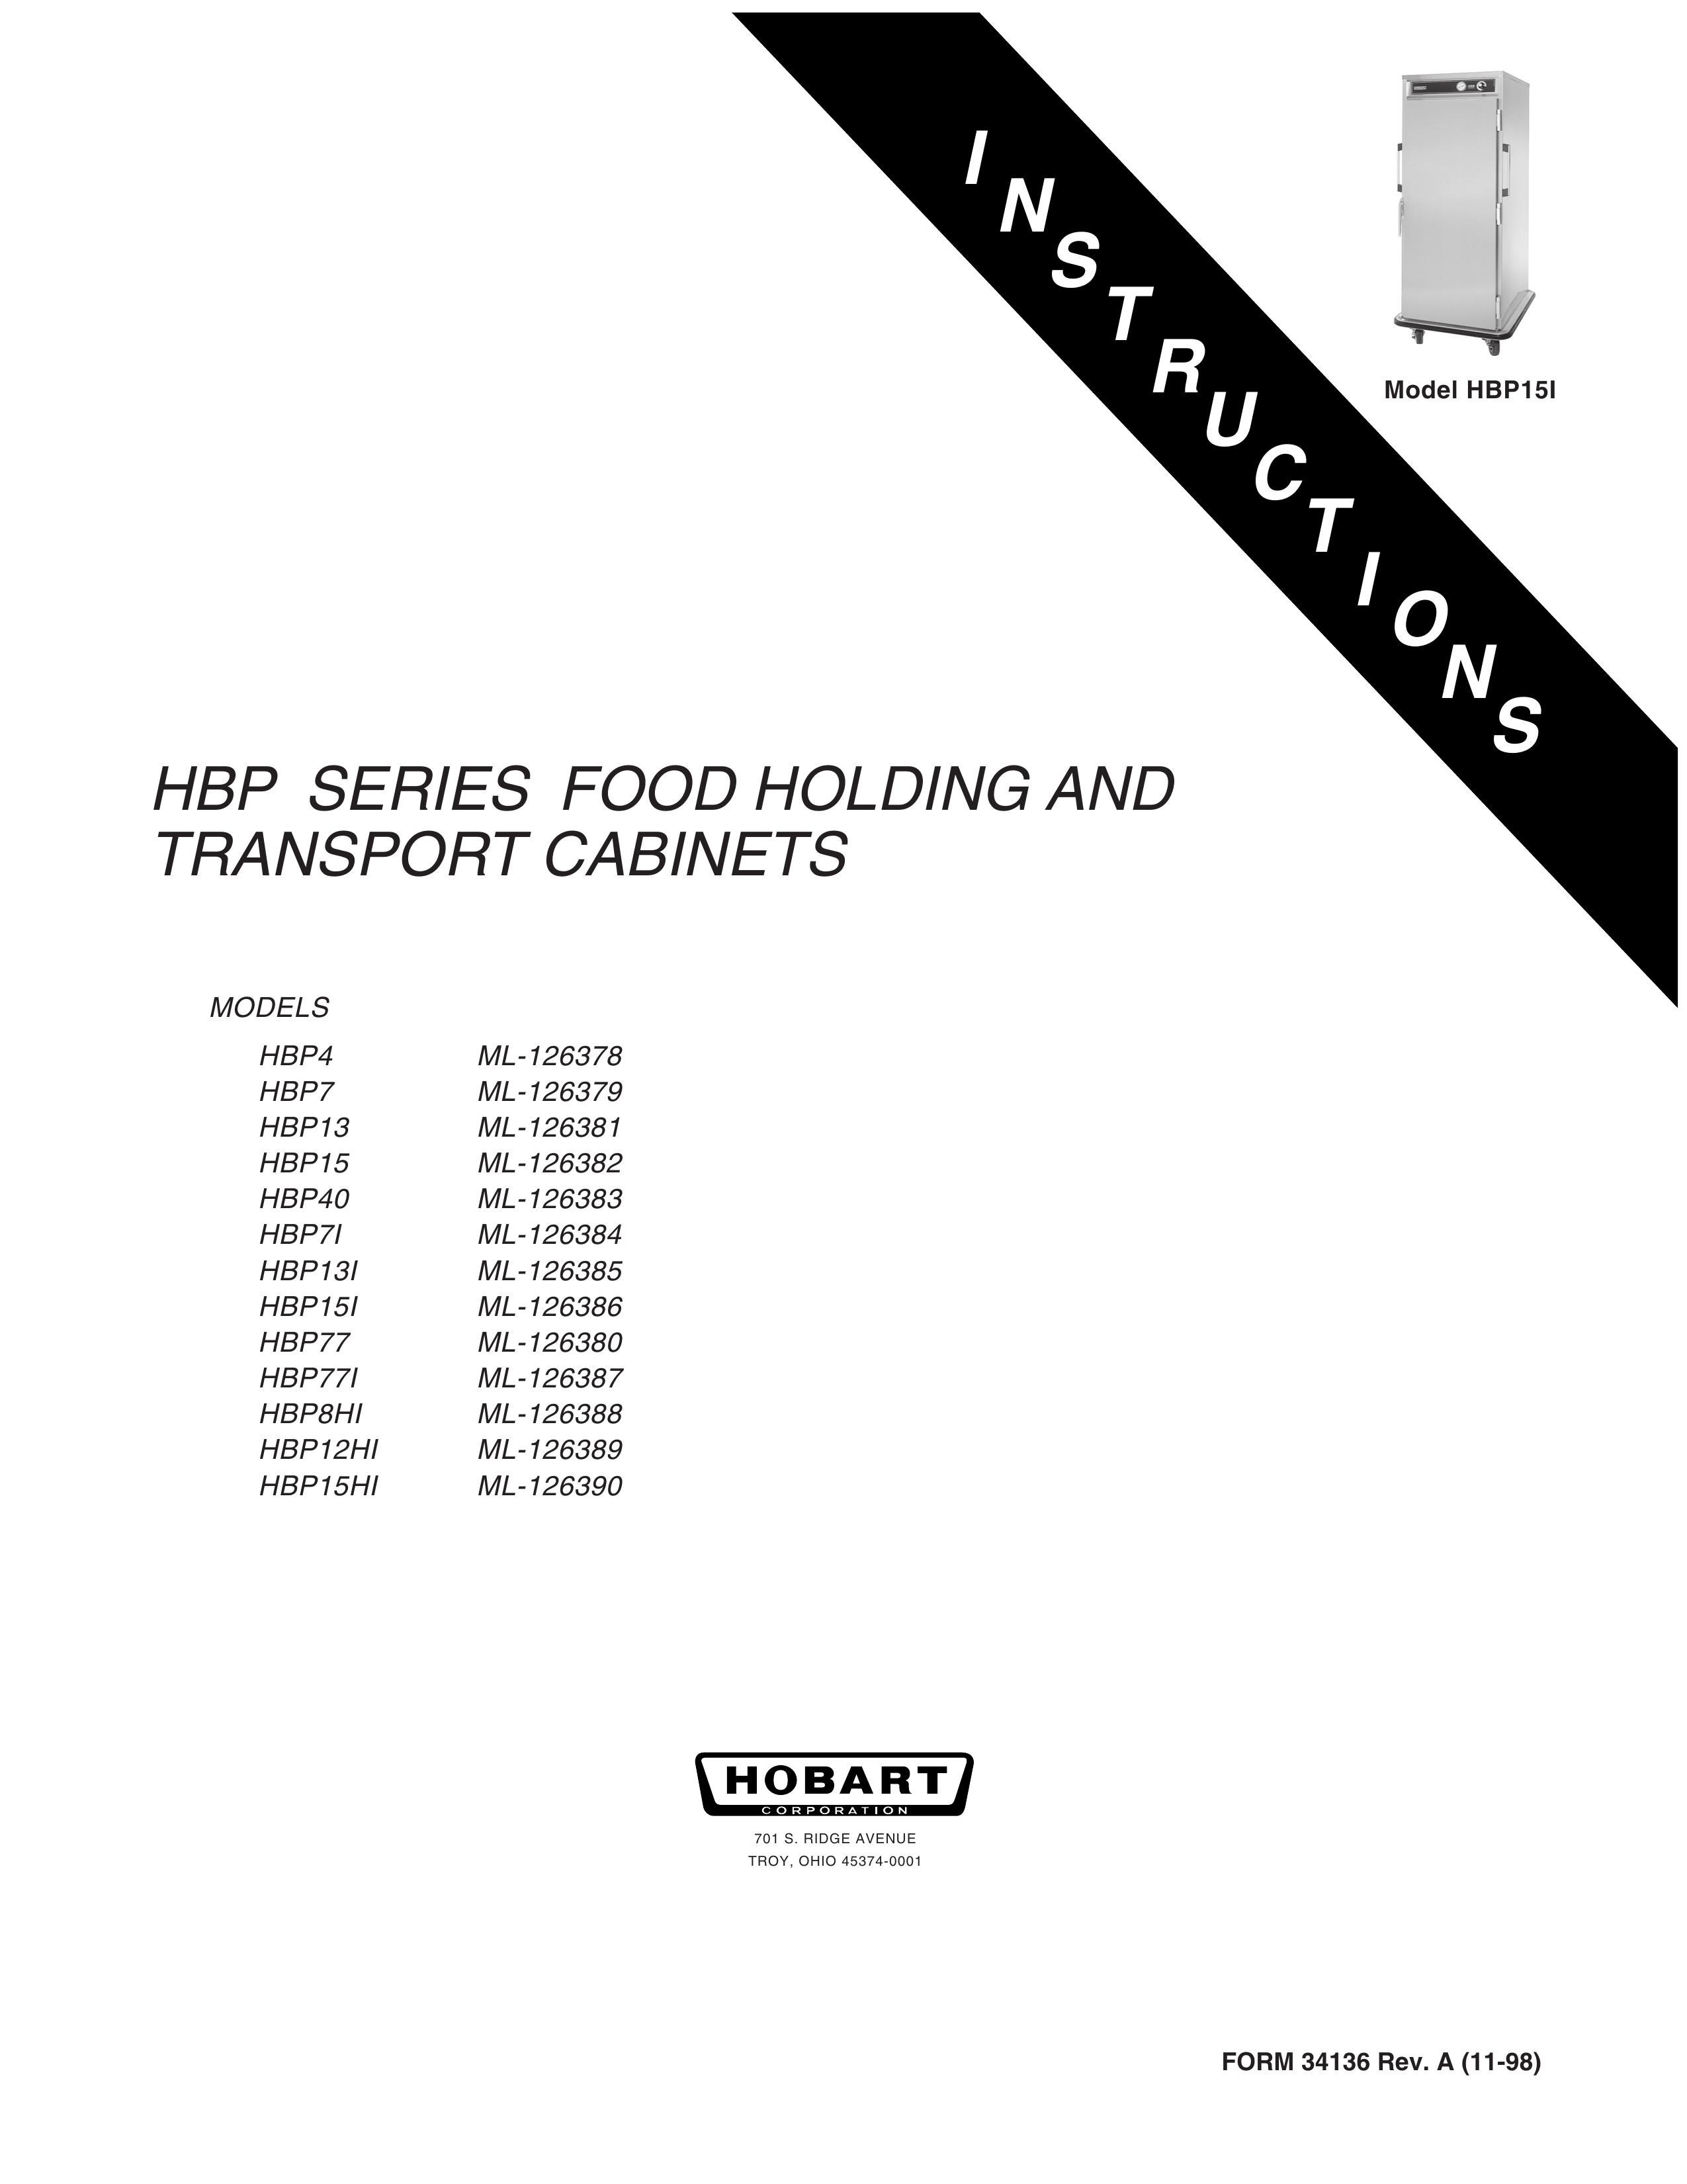 Hobart HBP8HI ML-126388 Outdoor Storage User Manual